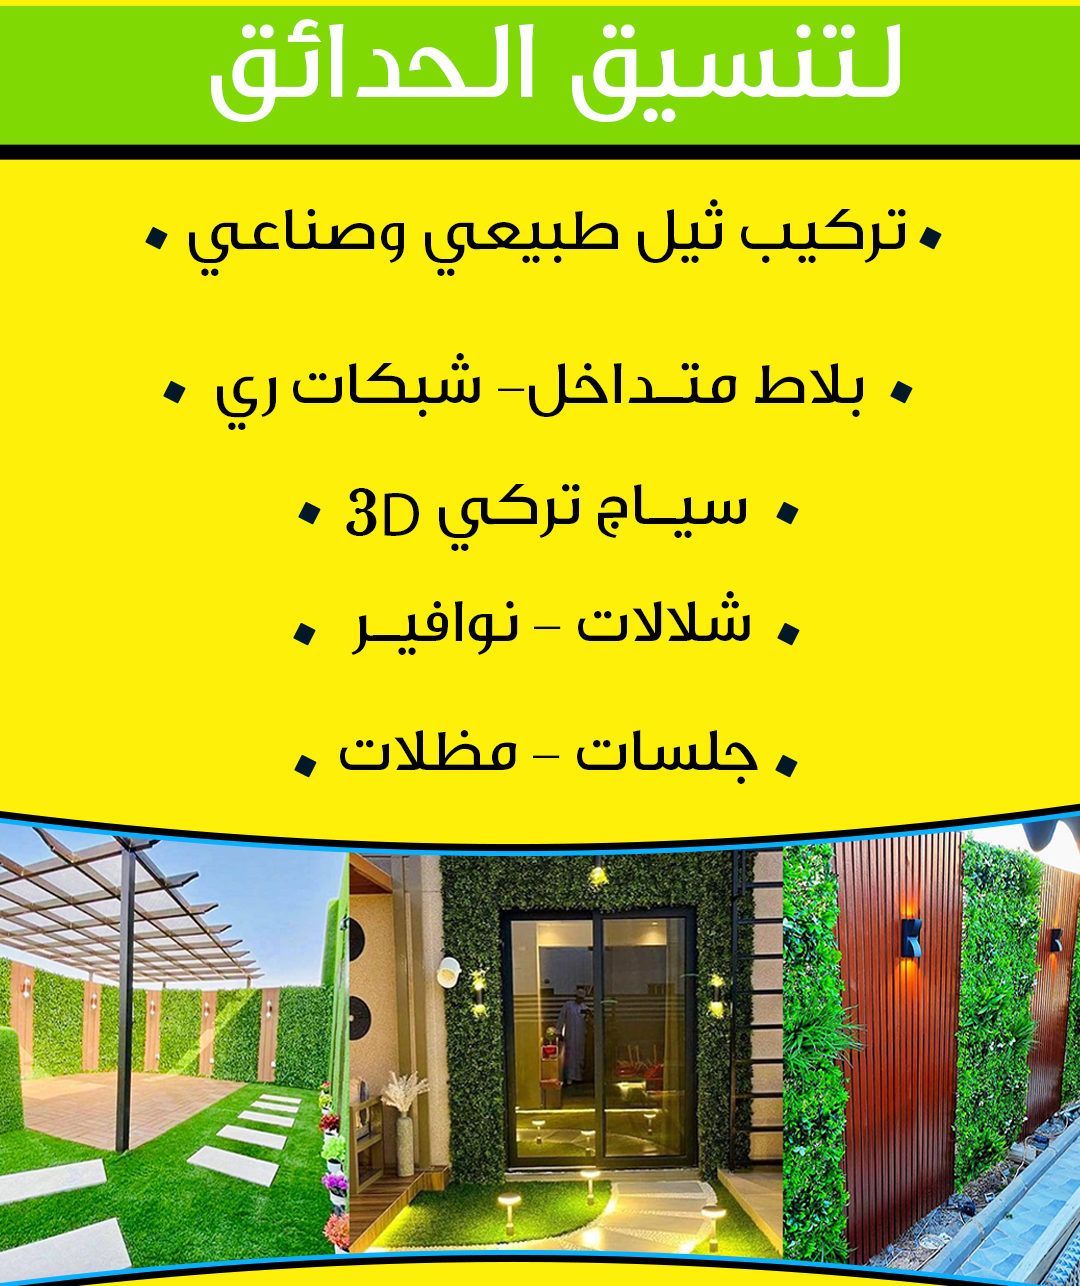 تنسيق حدائق الكويت  50452582 -تنسيق حدائق منزلية